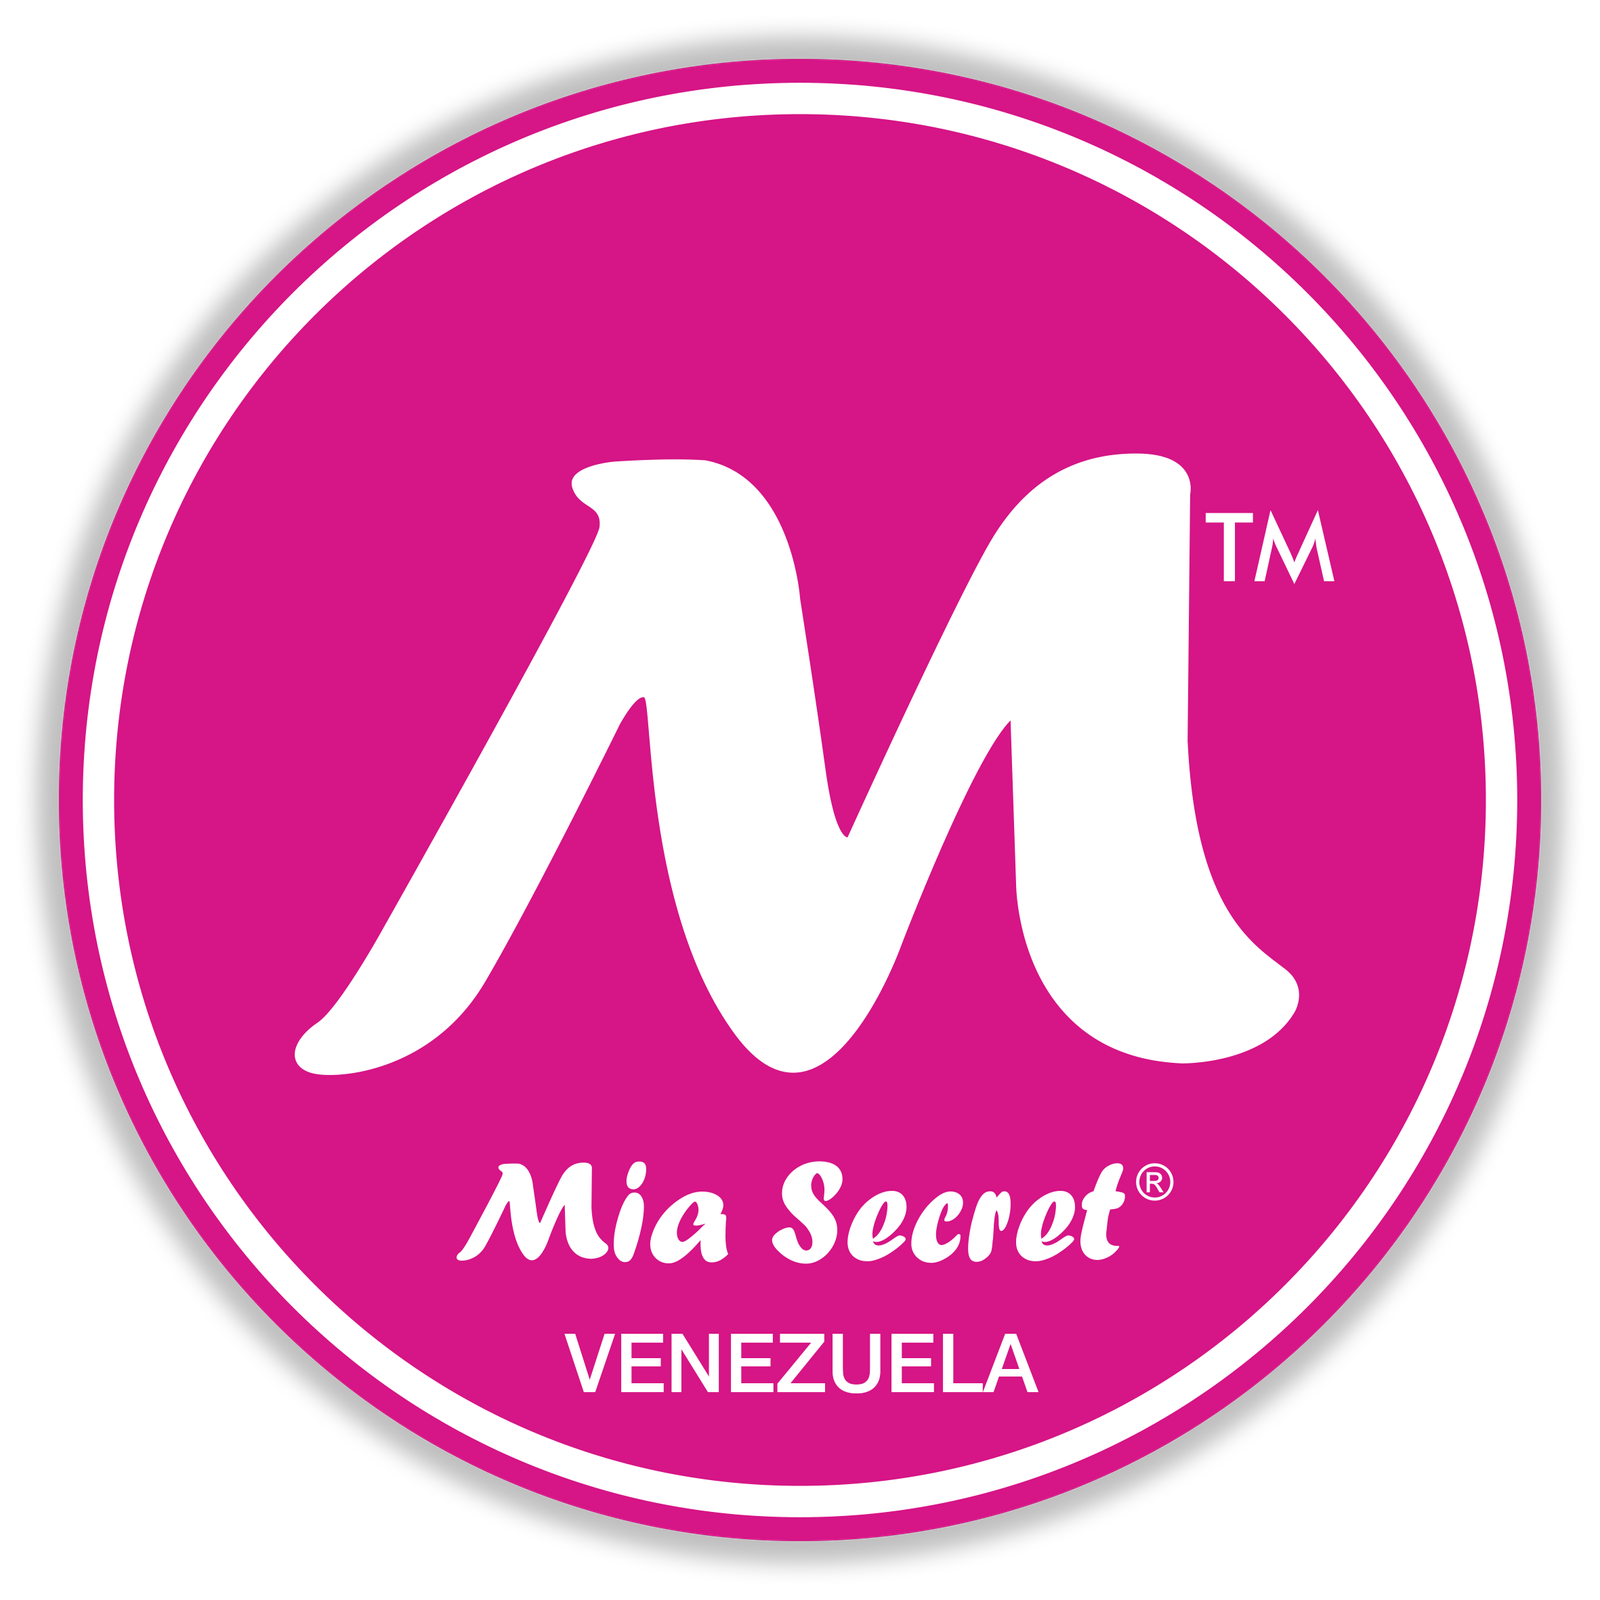 Mia Secret Venezuela